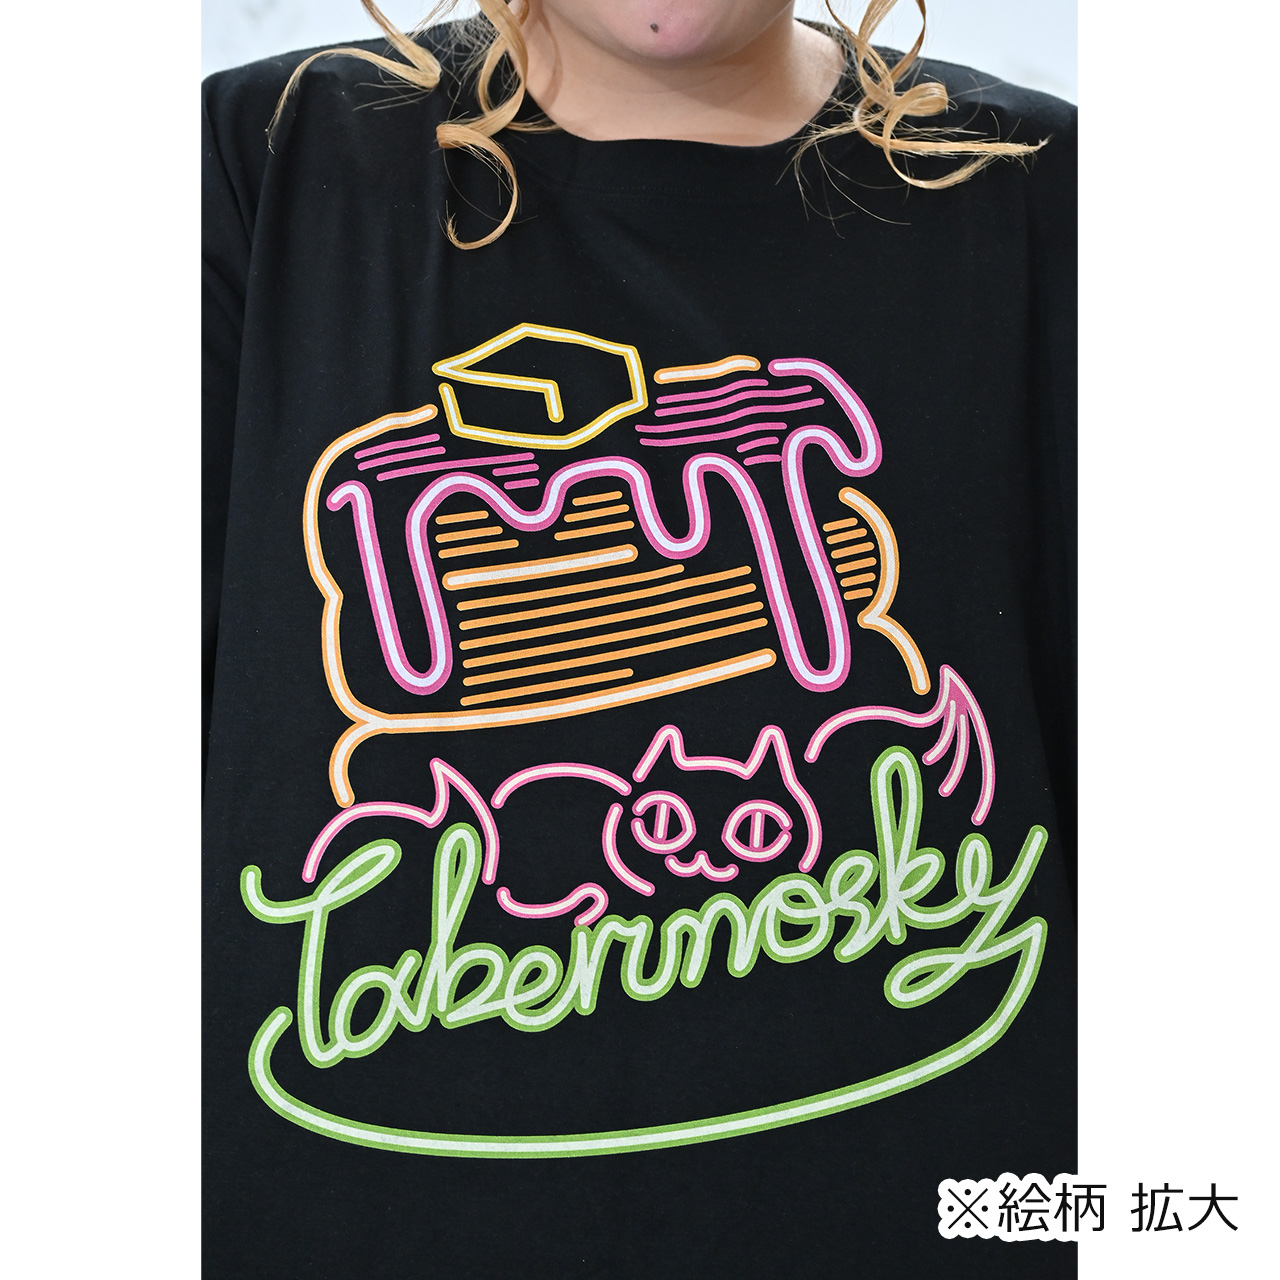 大きいサイズ レディース ≪受注生産≫Neon EatsパンケーキTシャツ/Taberunosky(タベルノスキー) 6